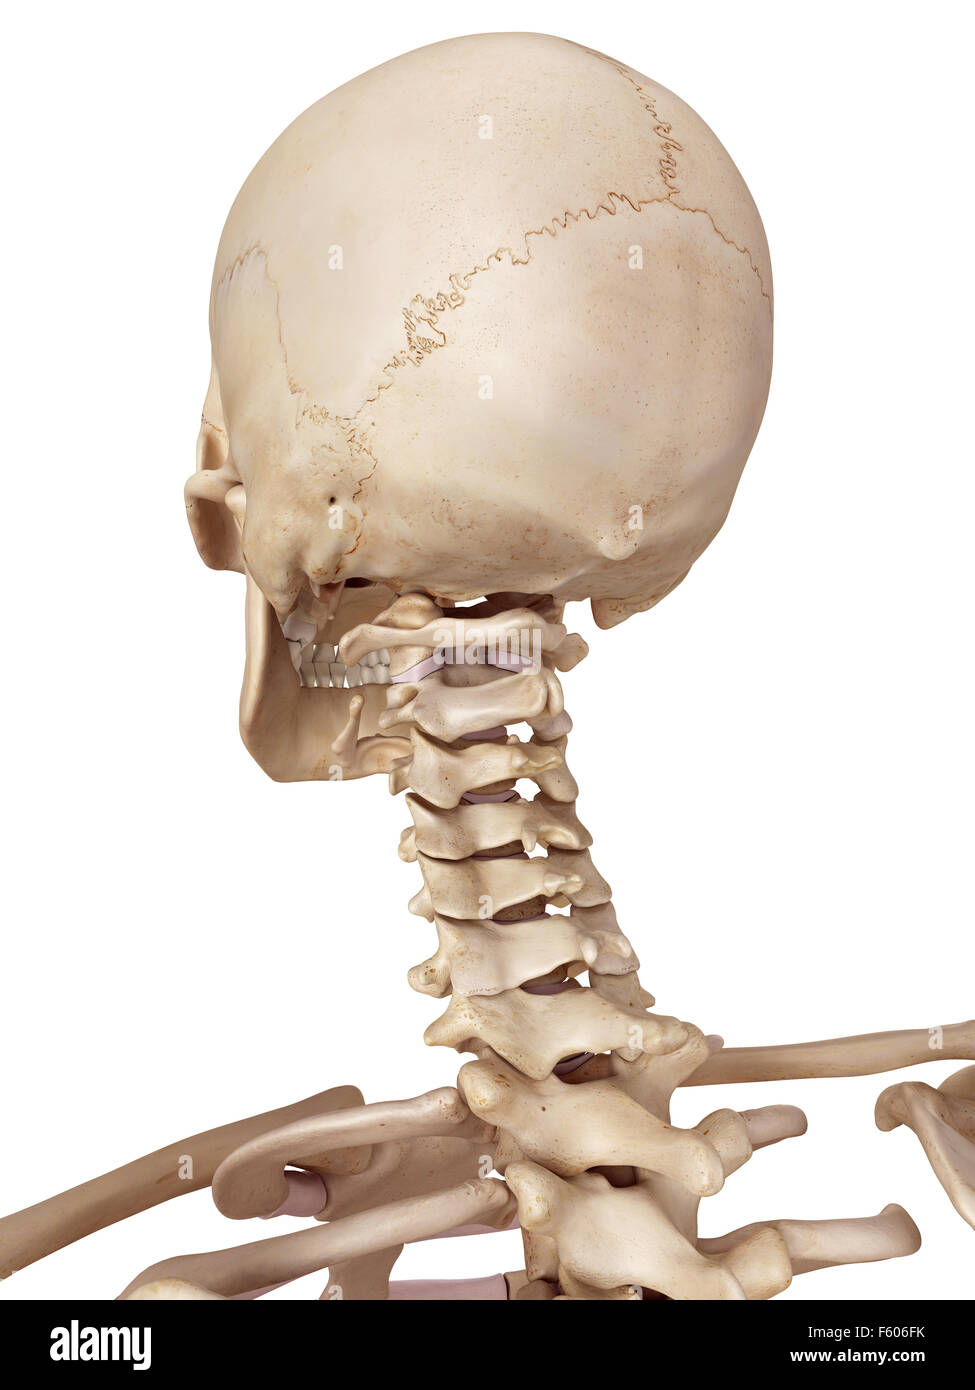 medizinische genaue Abbildung des menschlichen Schädels und des Halses Stockfoto